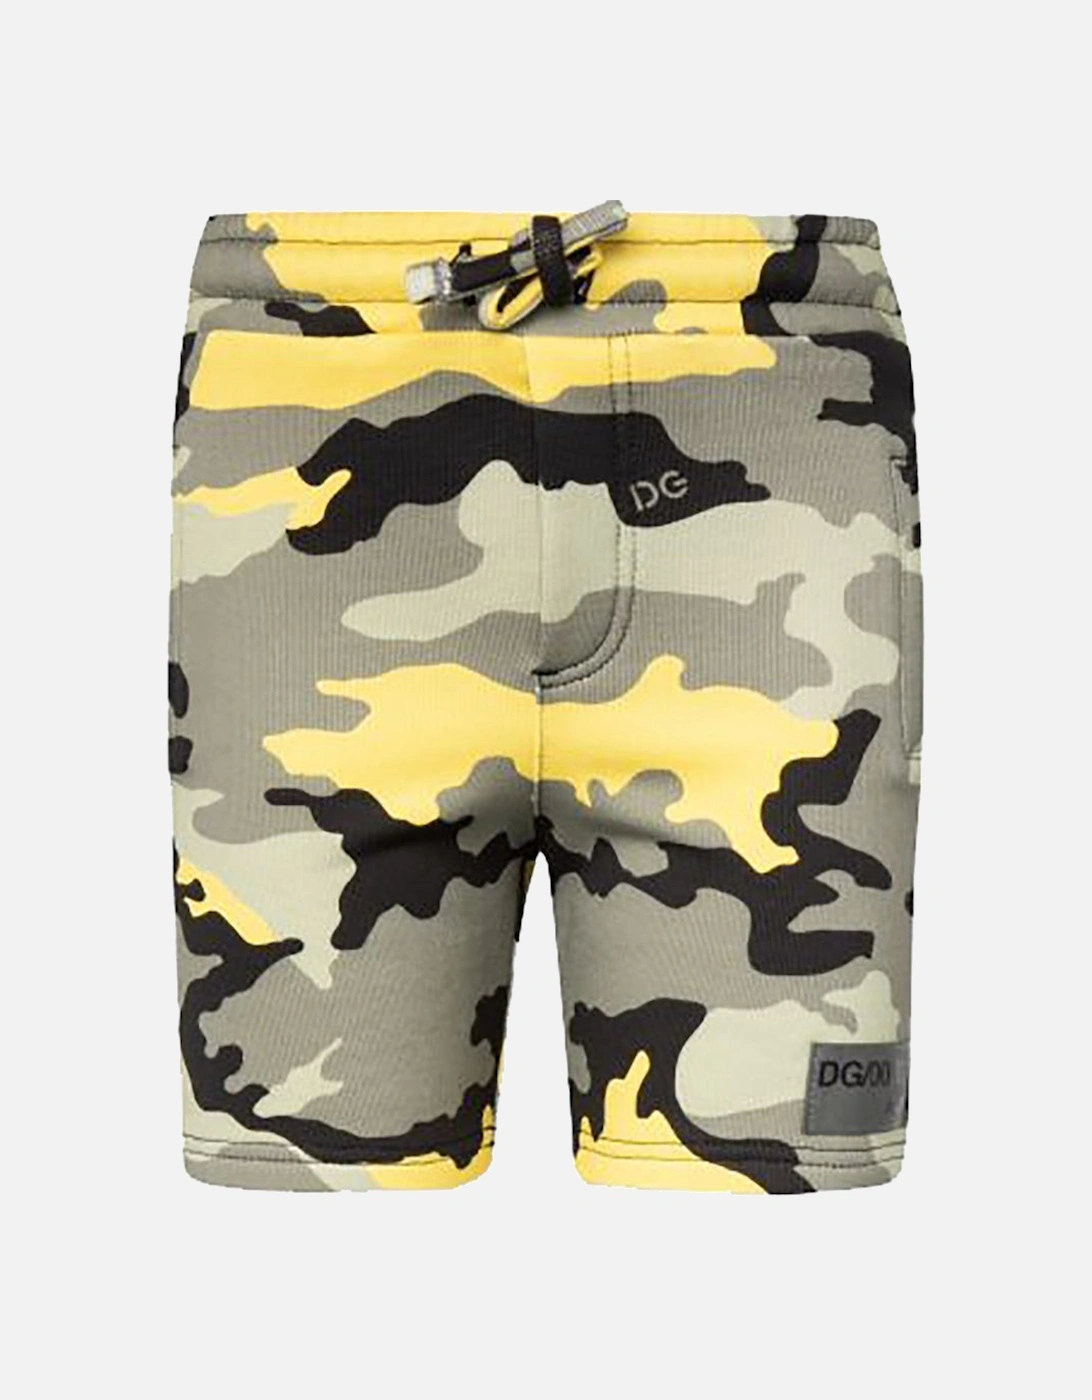 Boys Camouflage shorts, 2 of 1